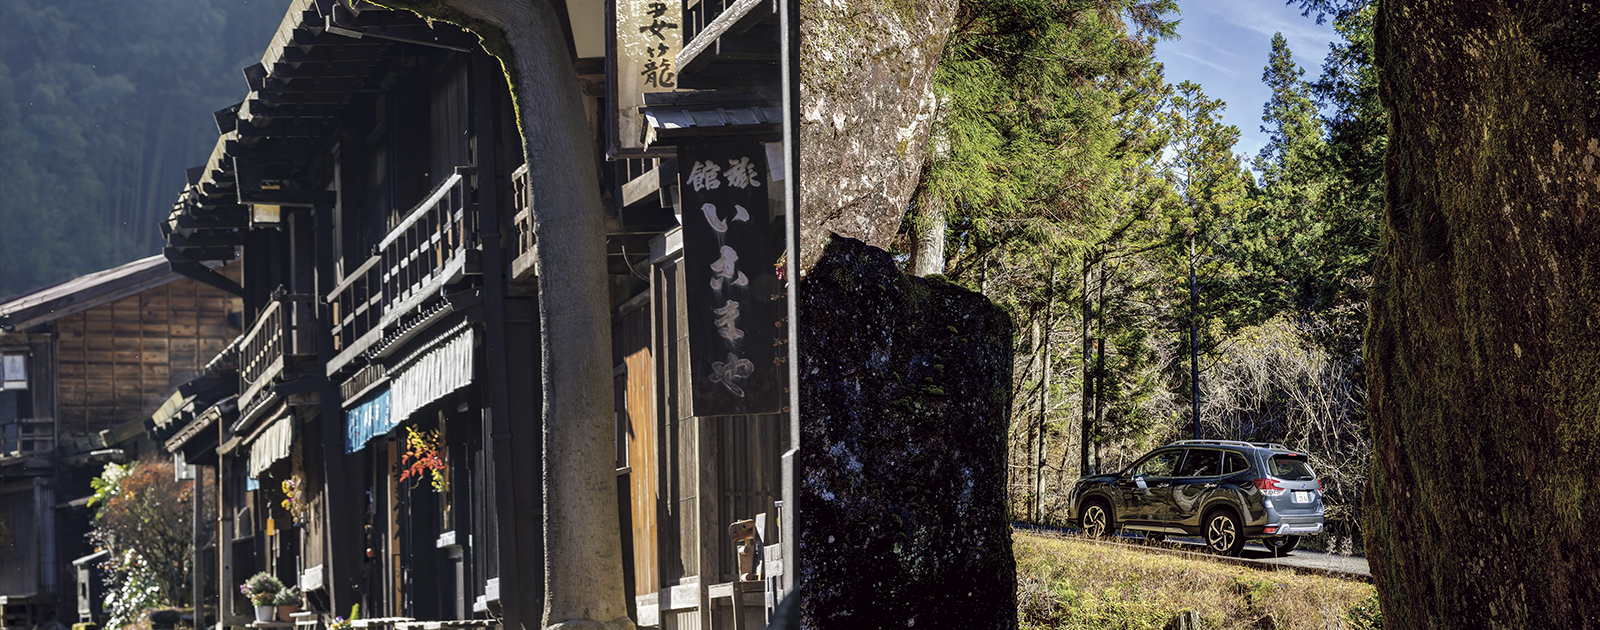 カートピア 長野県妻籠宿と岐阜県の金山巨石群 | SUBARU